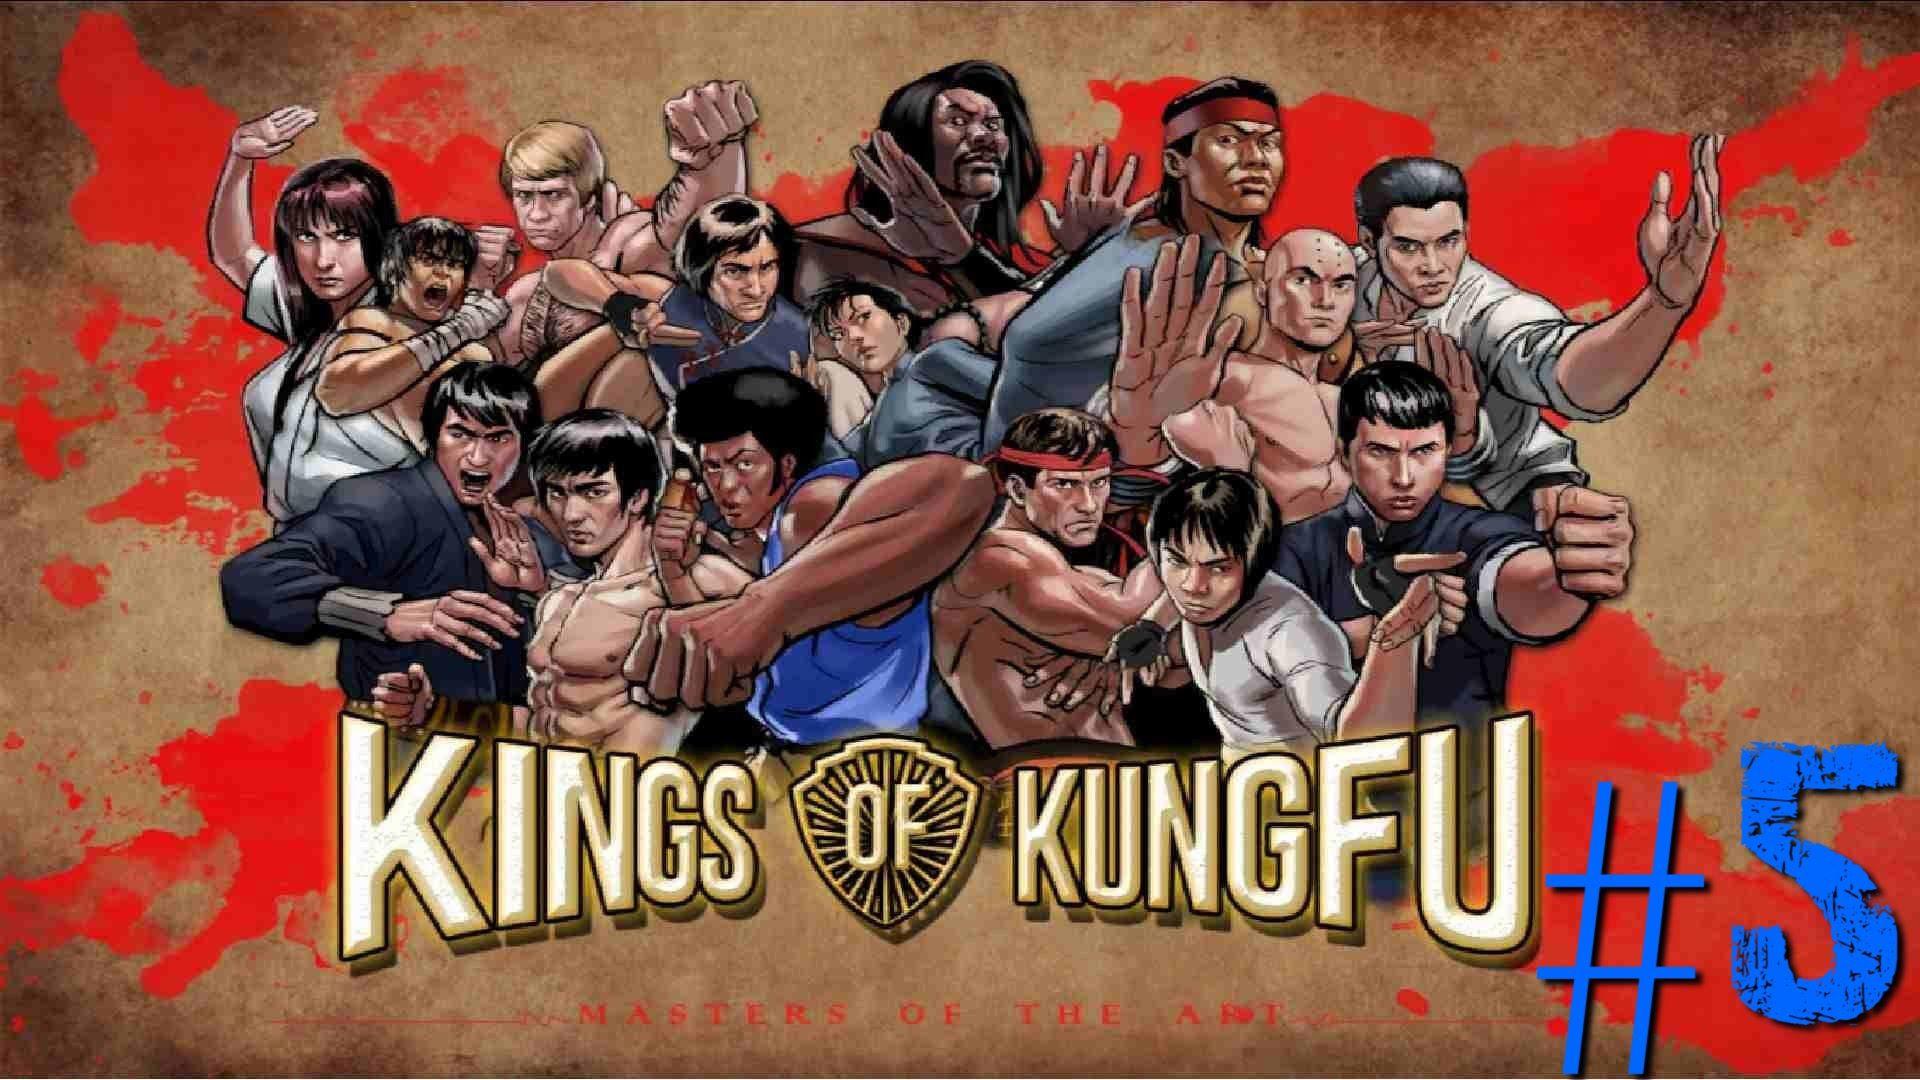 Kings of Kung Fu Man vs Bruce Lee